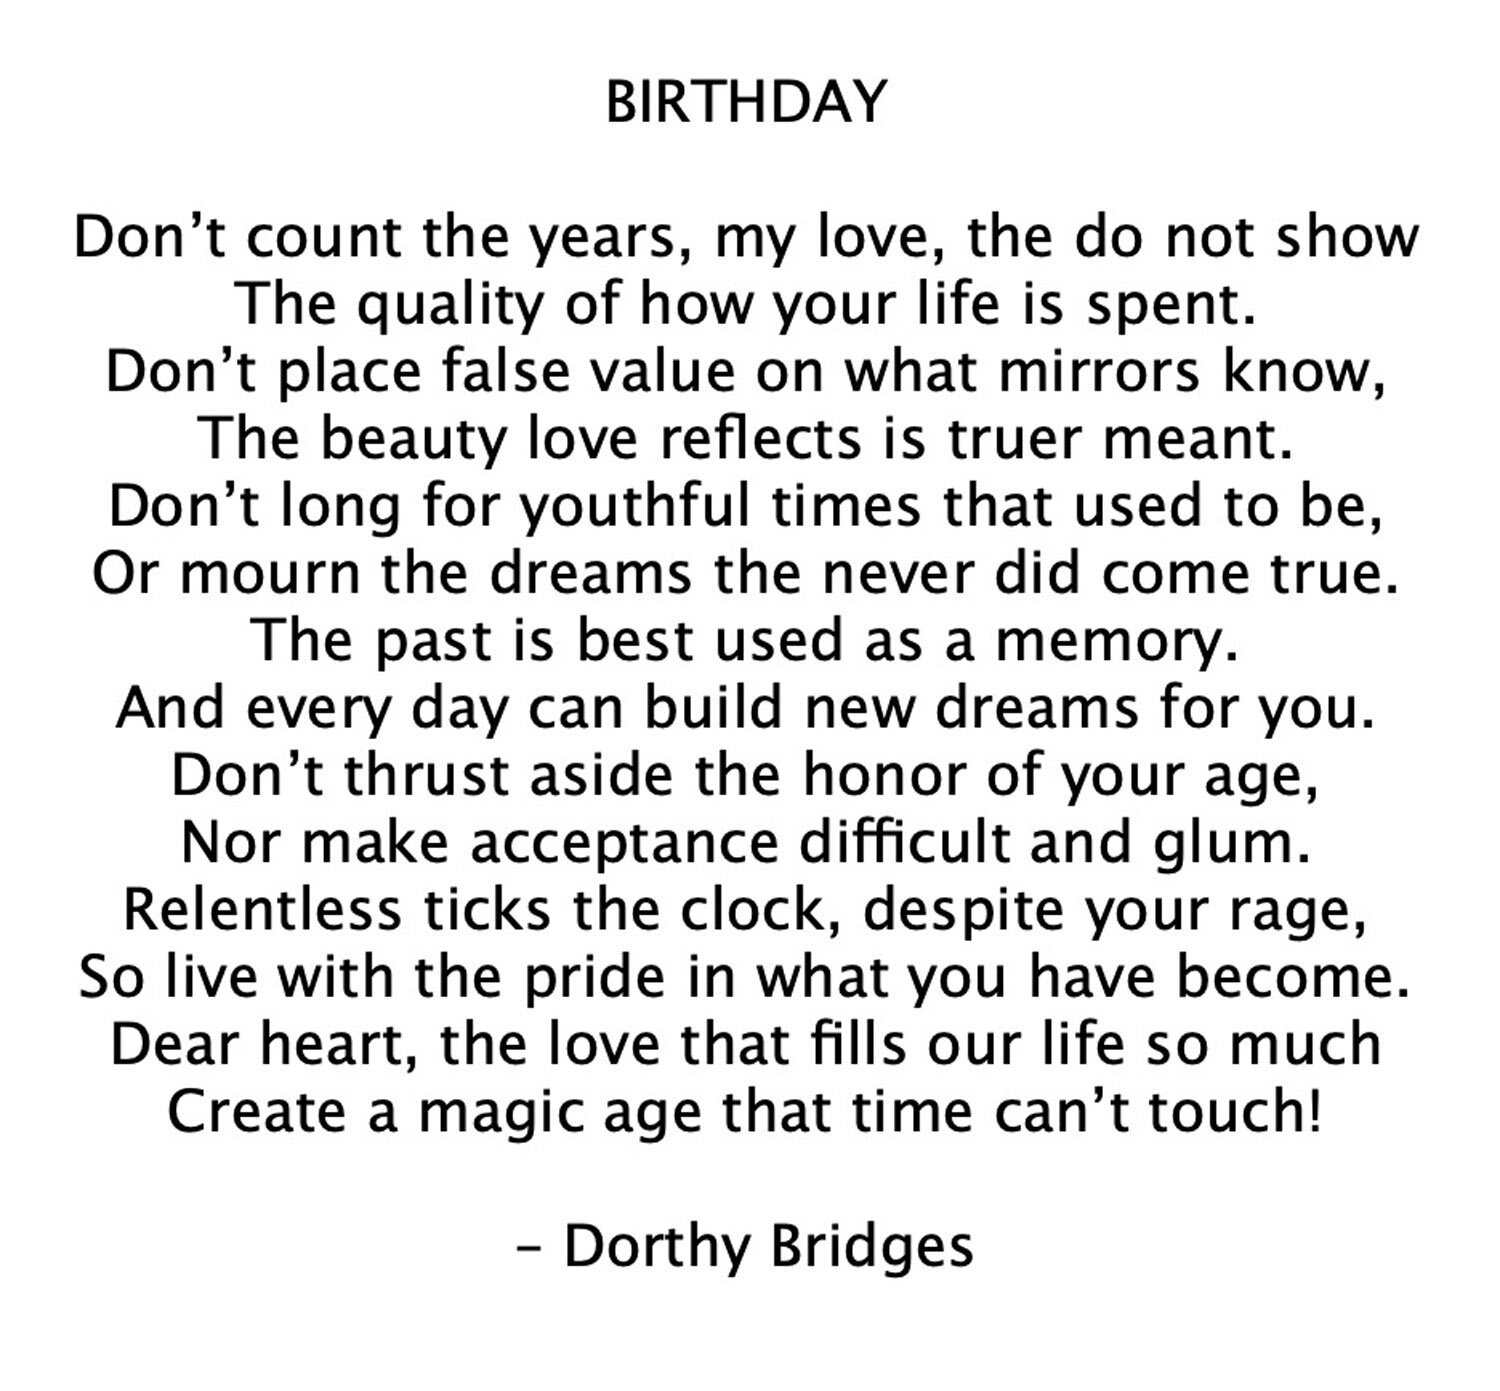 dorthy_birthday_poem2.jpg